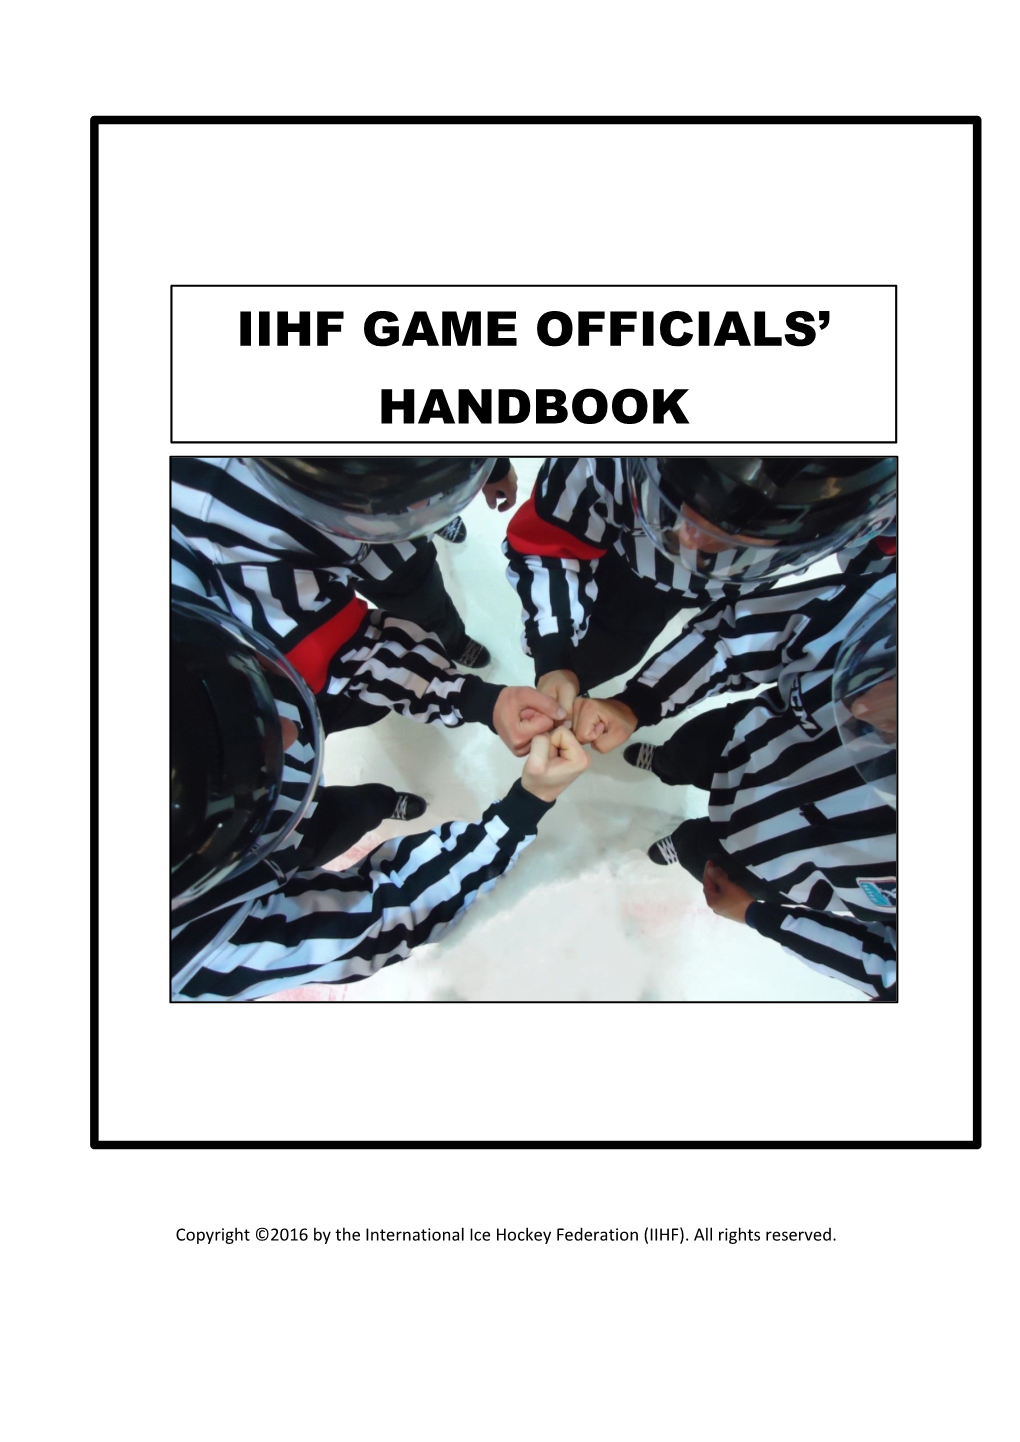 IIHF Game Officials' Handbook